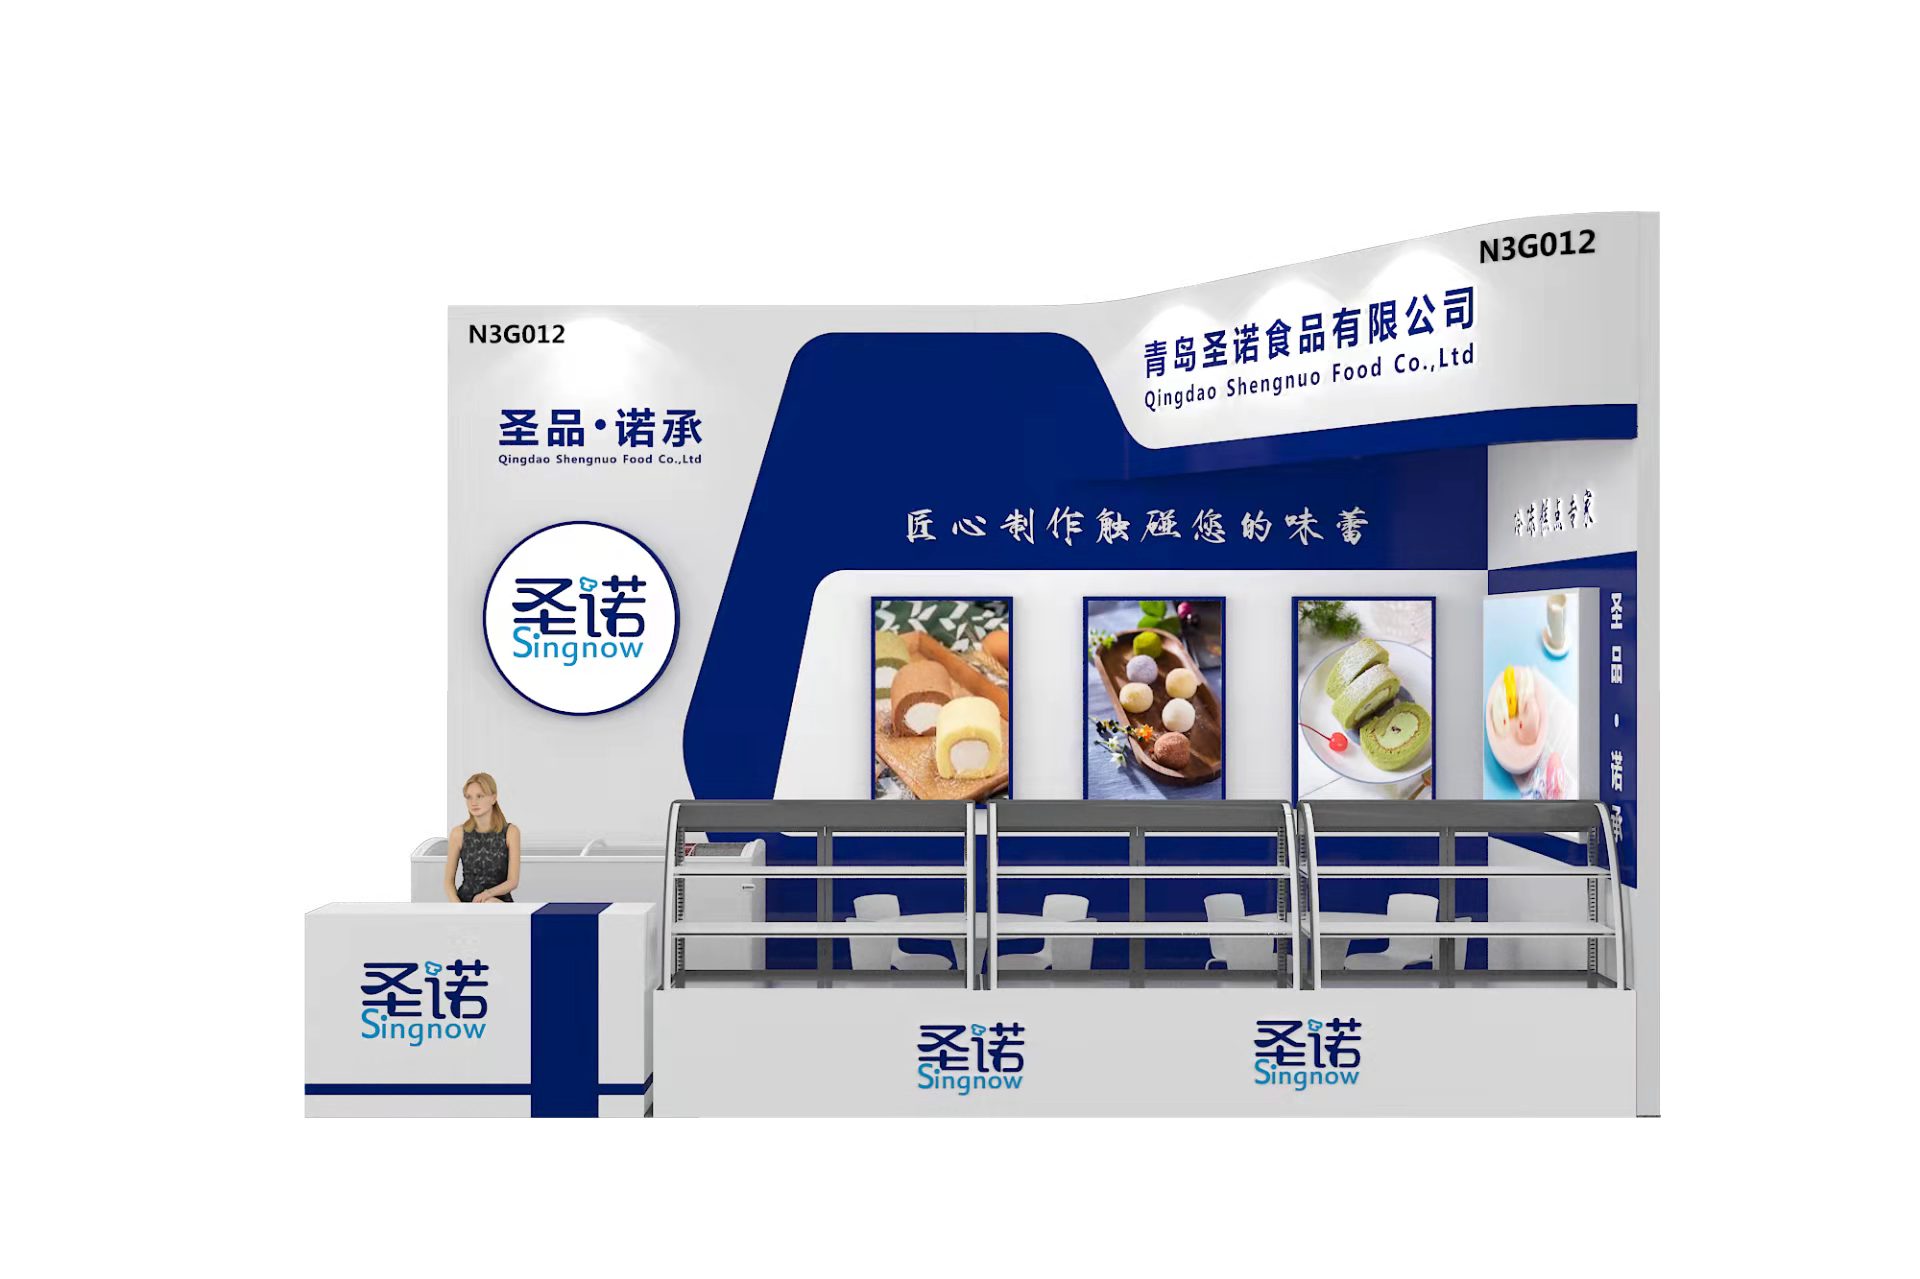 【特装欣赏合集一】 第14届歌华食材展将于8月23-25日亮相上海新国际博览中心(图42)